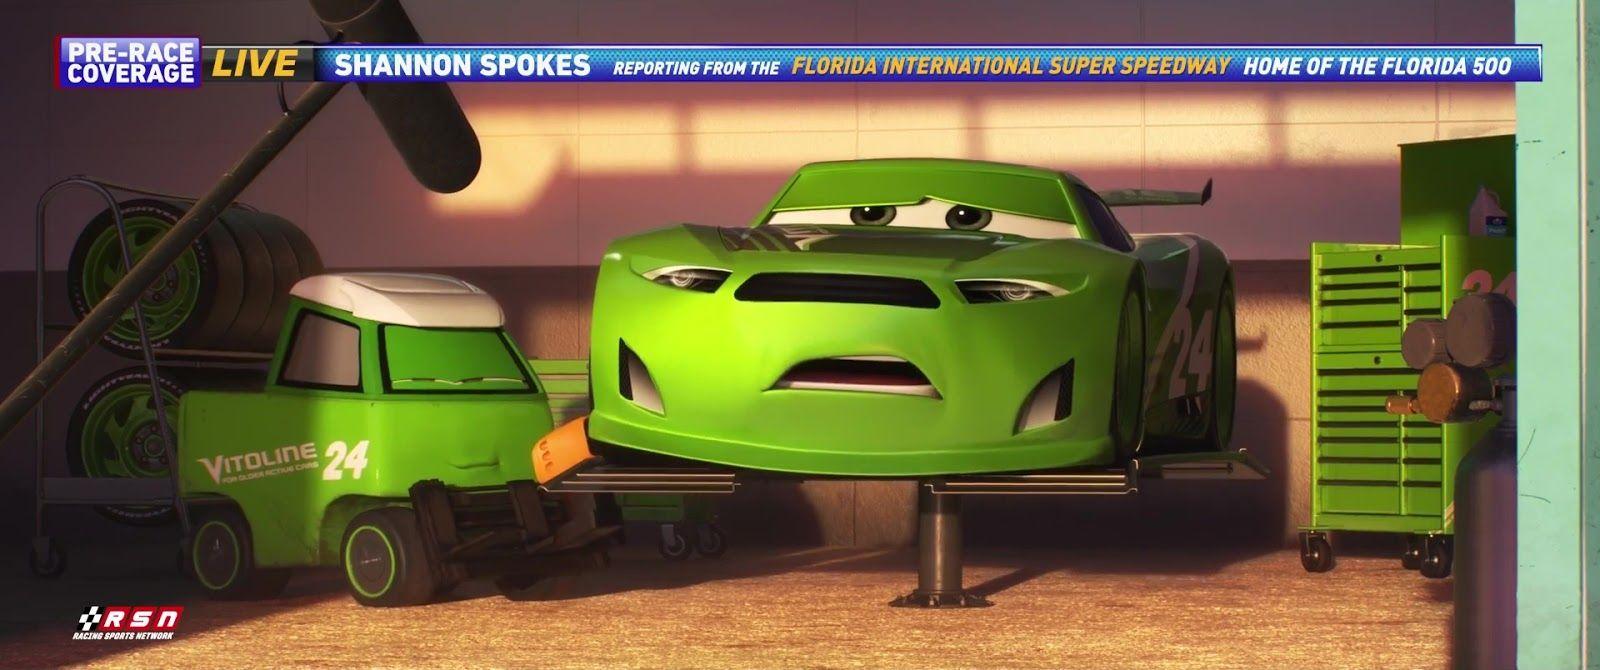 Vitoline Logo - Dan the Pixar Fan: Cars 3: Chase Racelott (Vitoline)